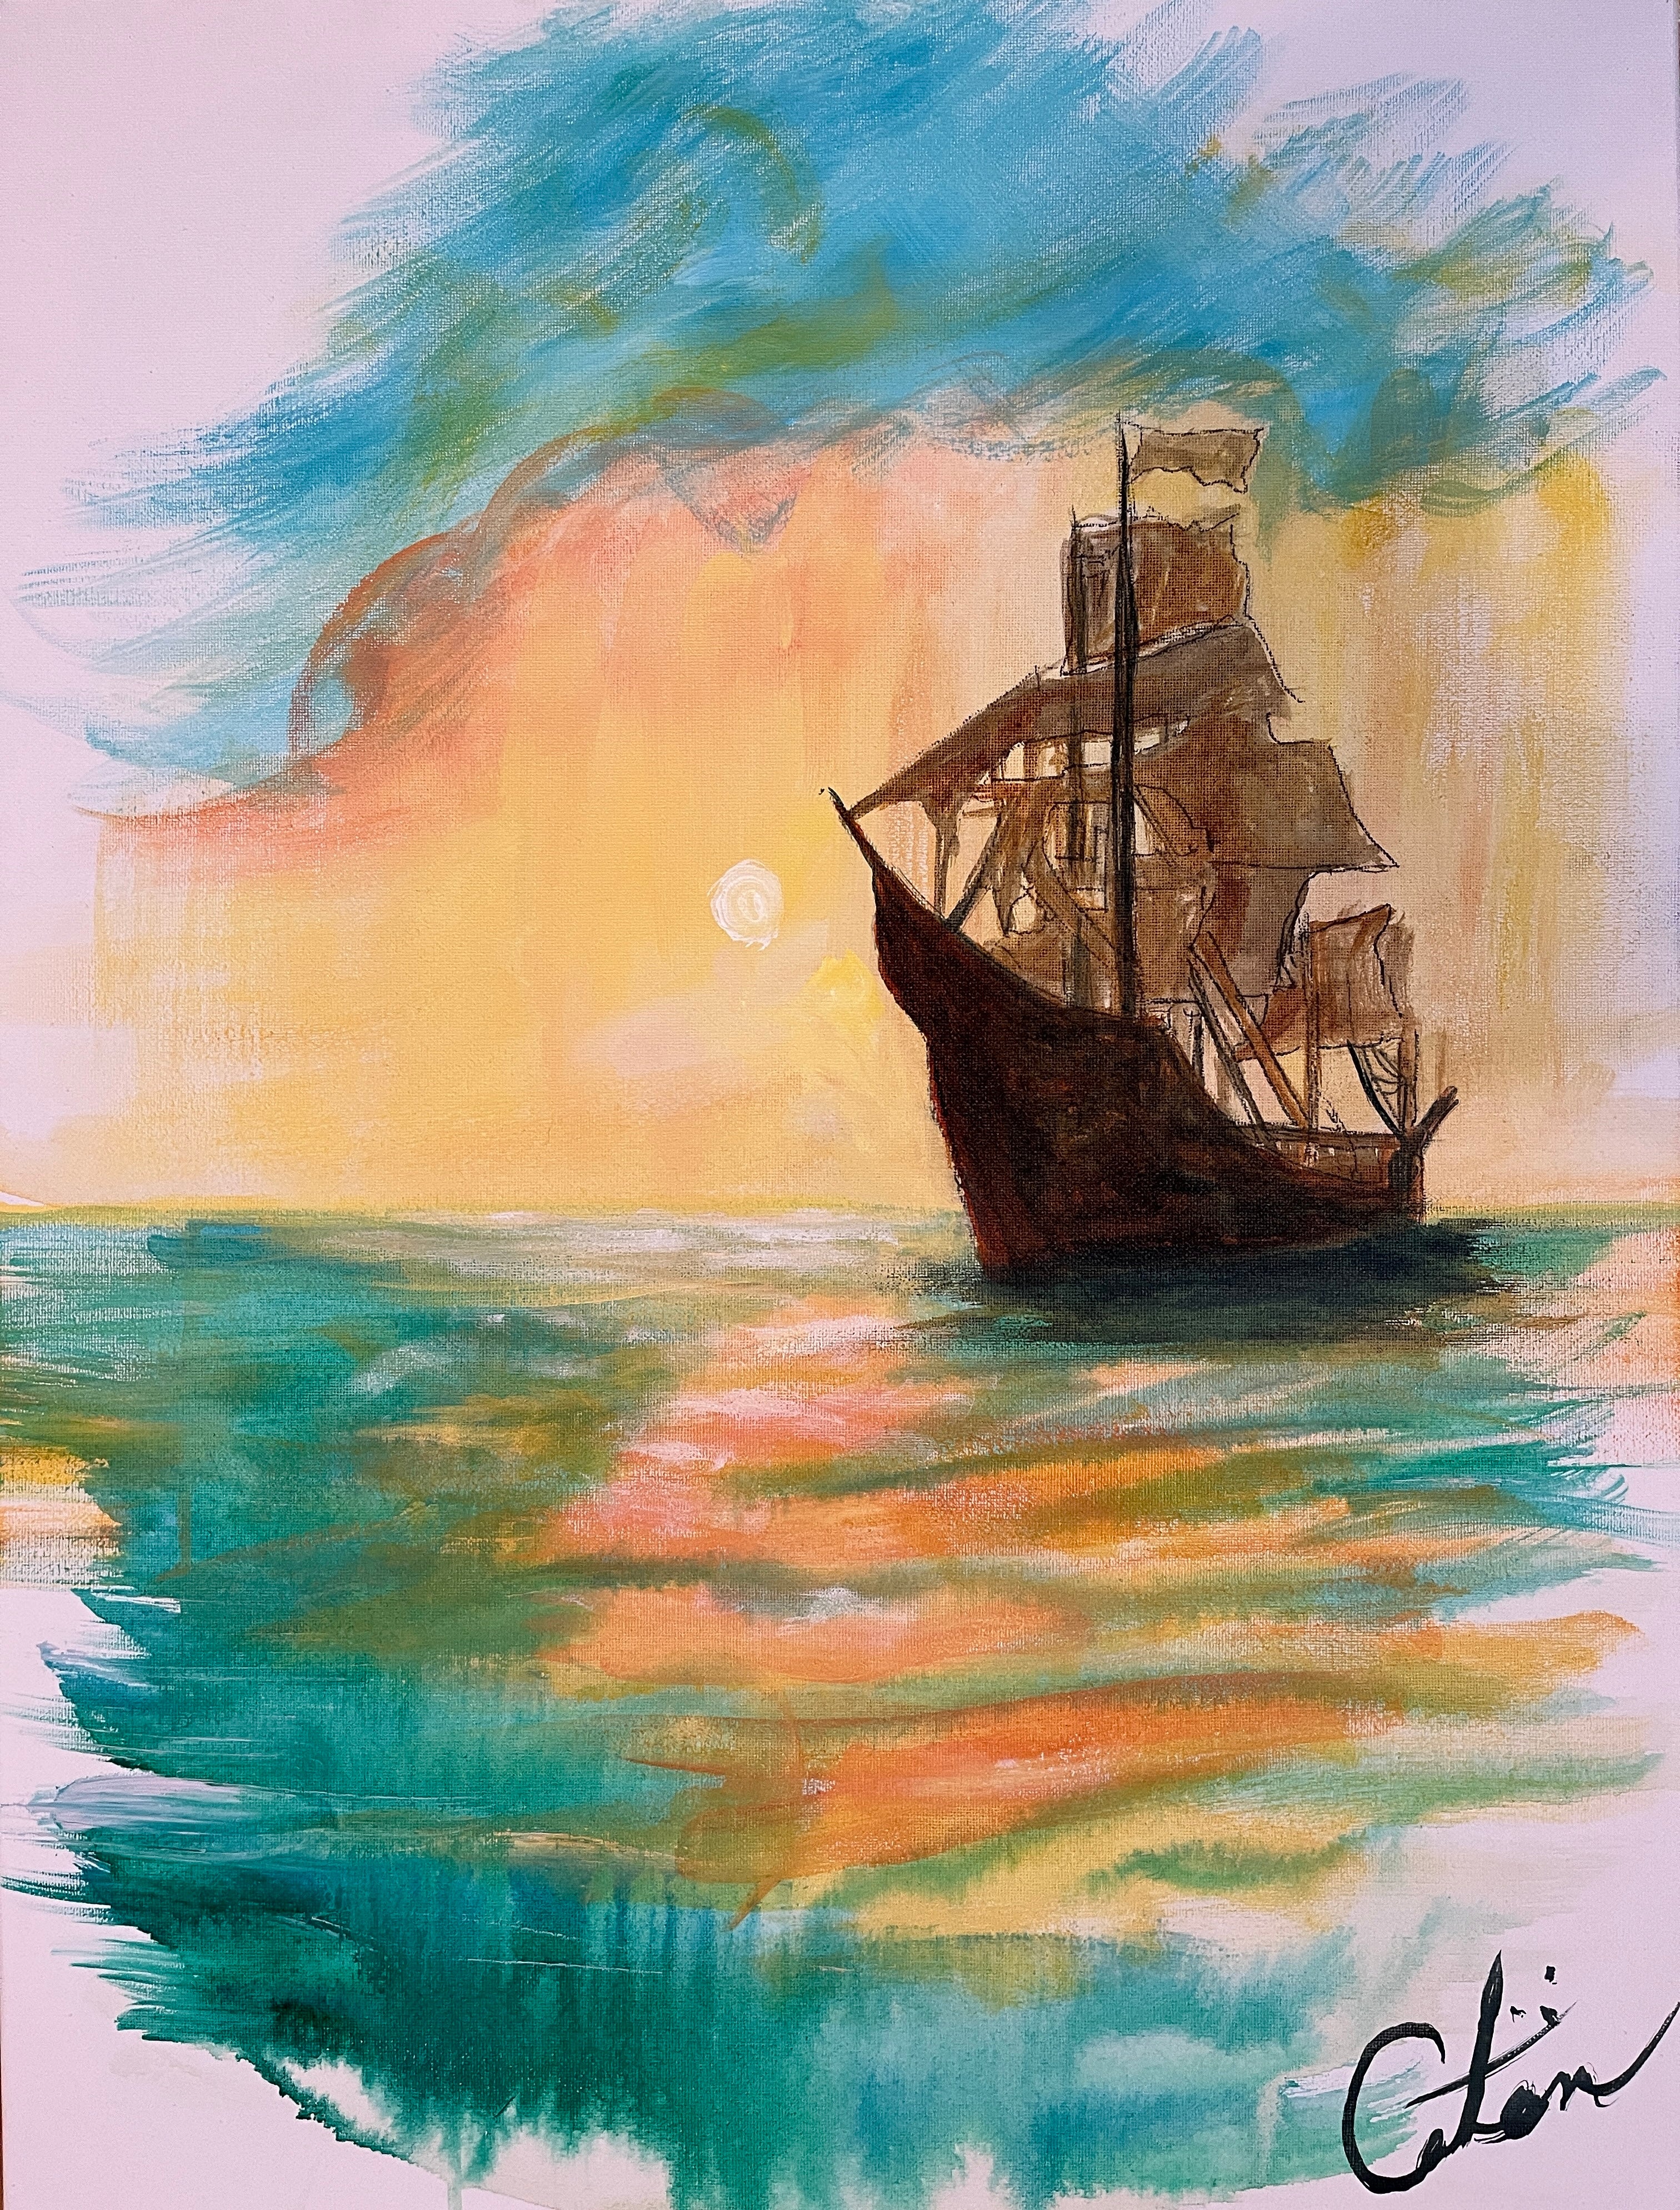 "Sail Away"